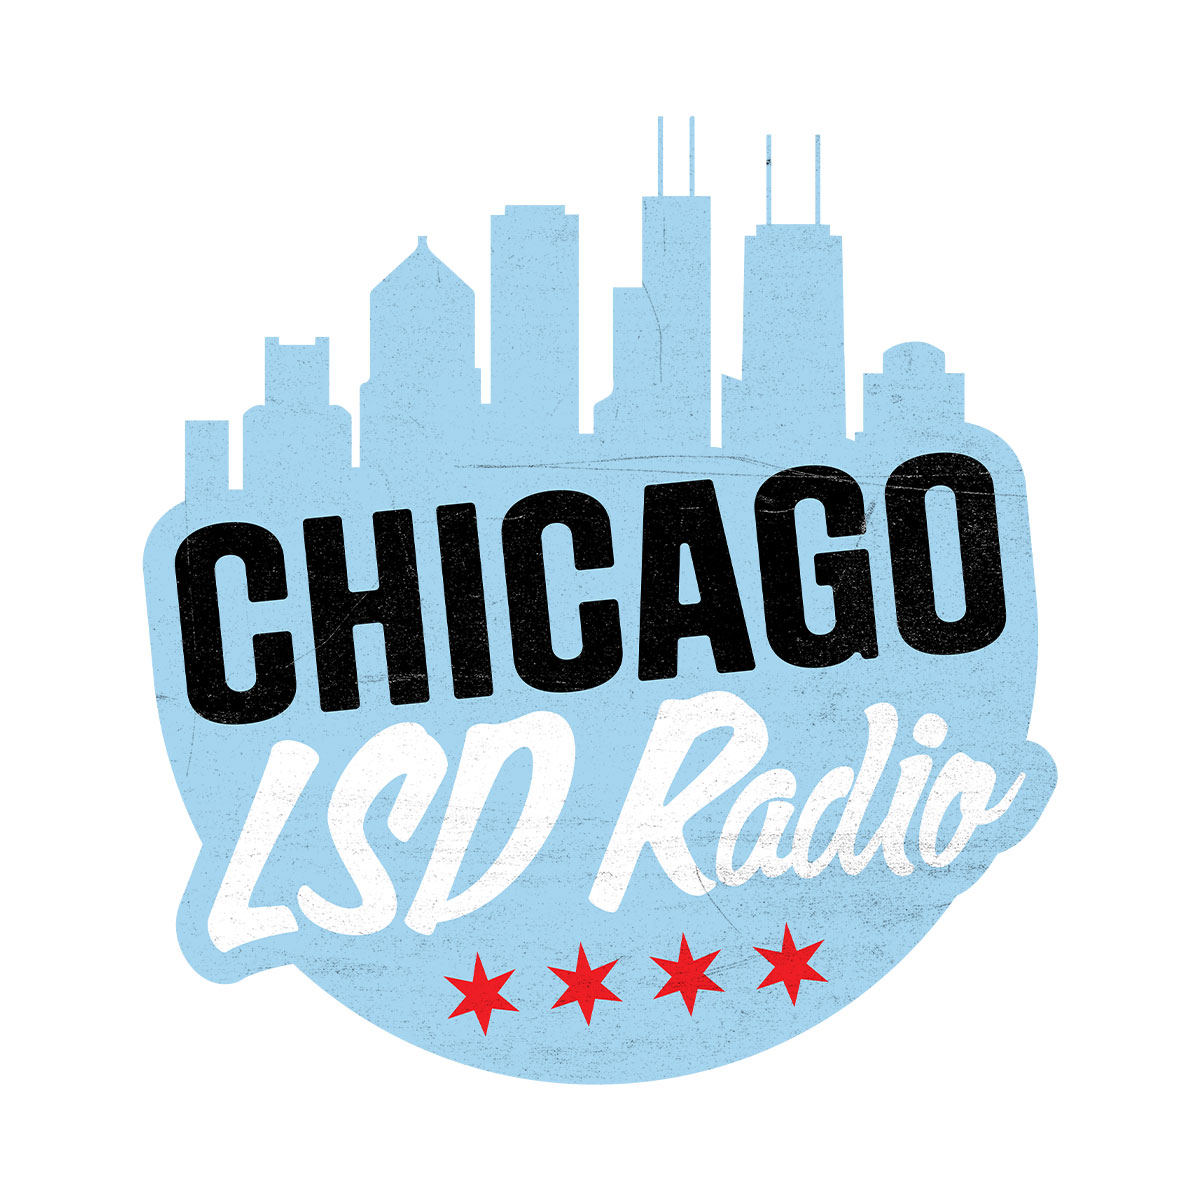 Art for Chicago LSD Radio by Chicago LSD Radio